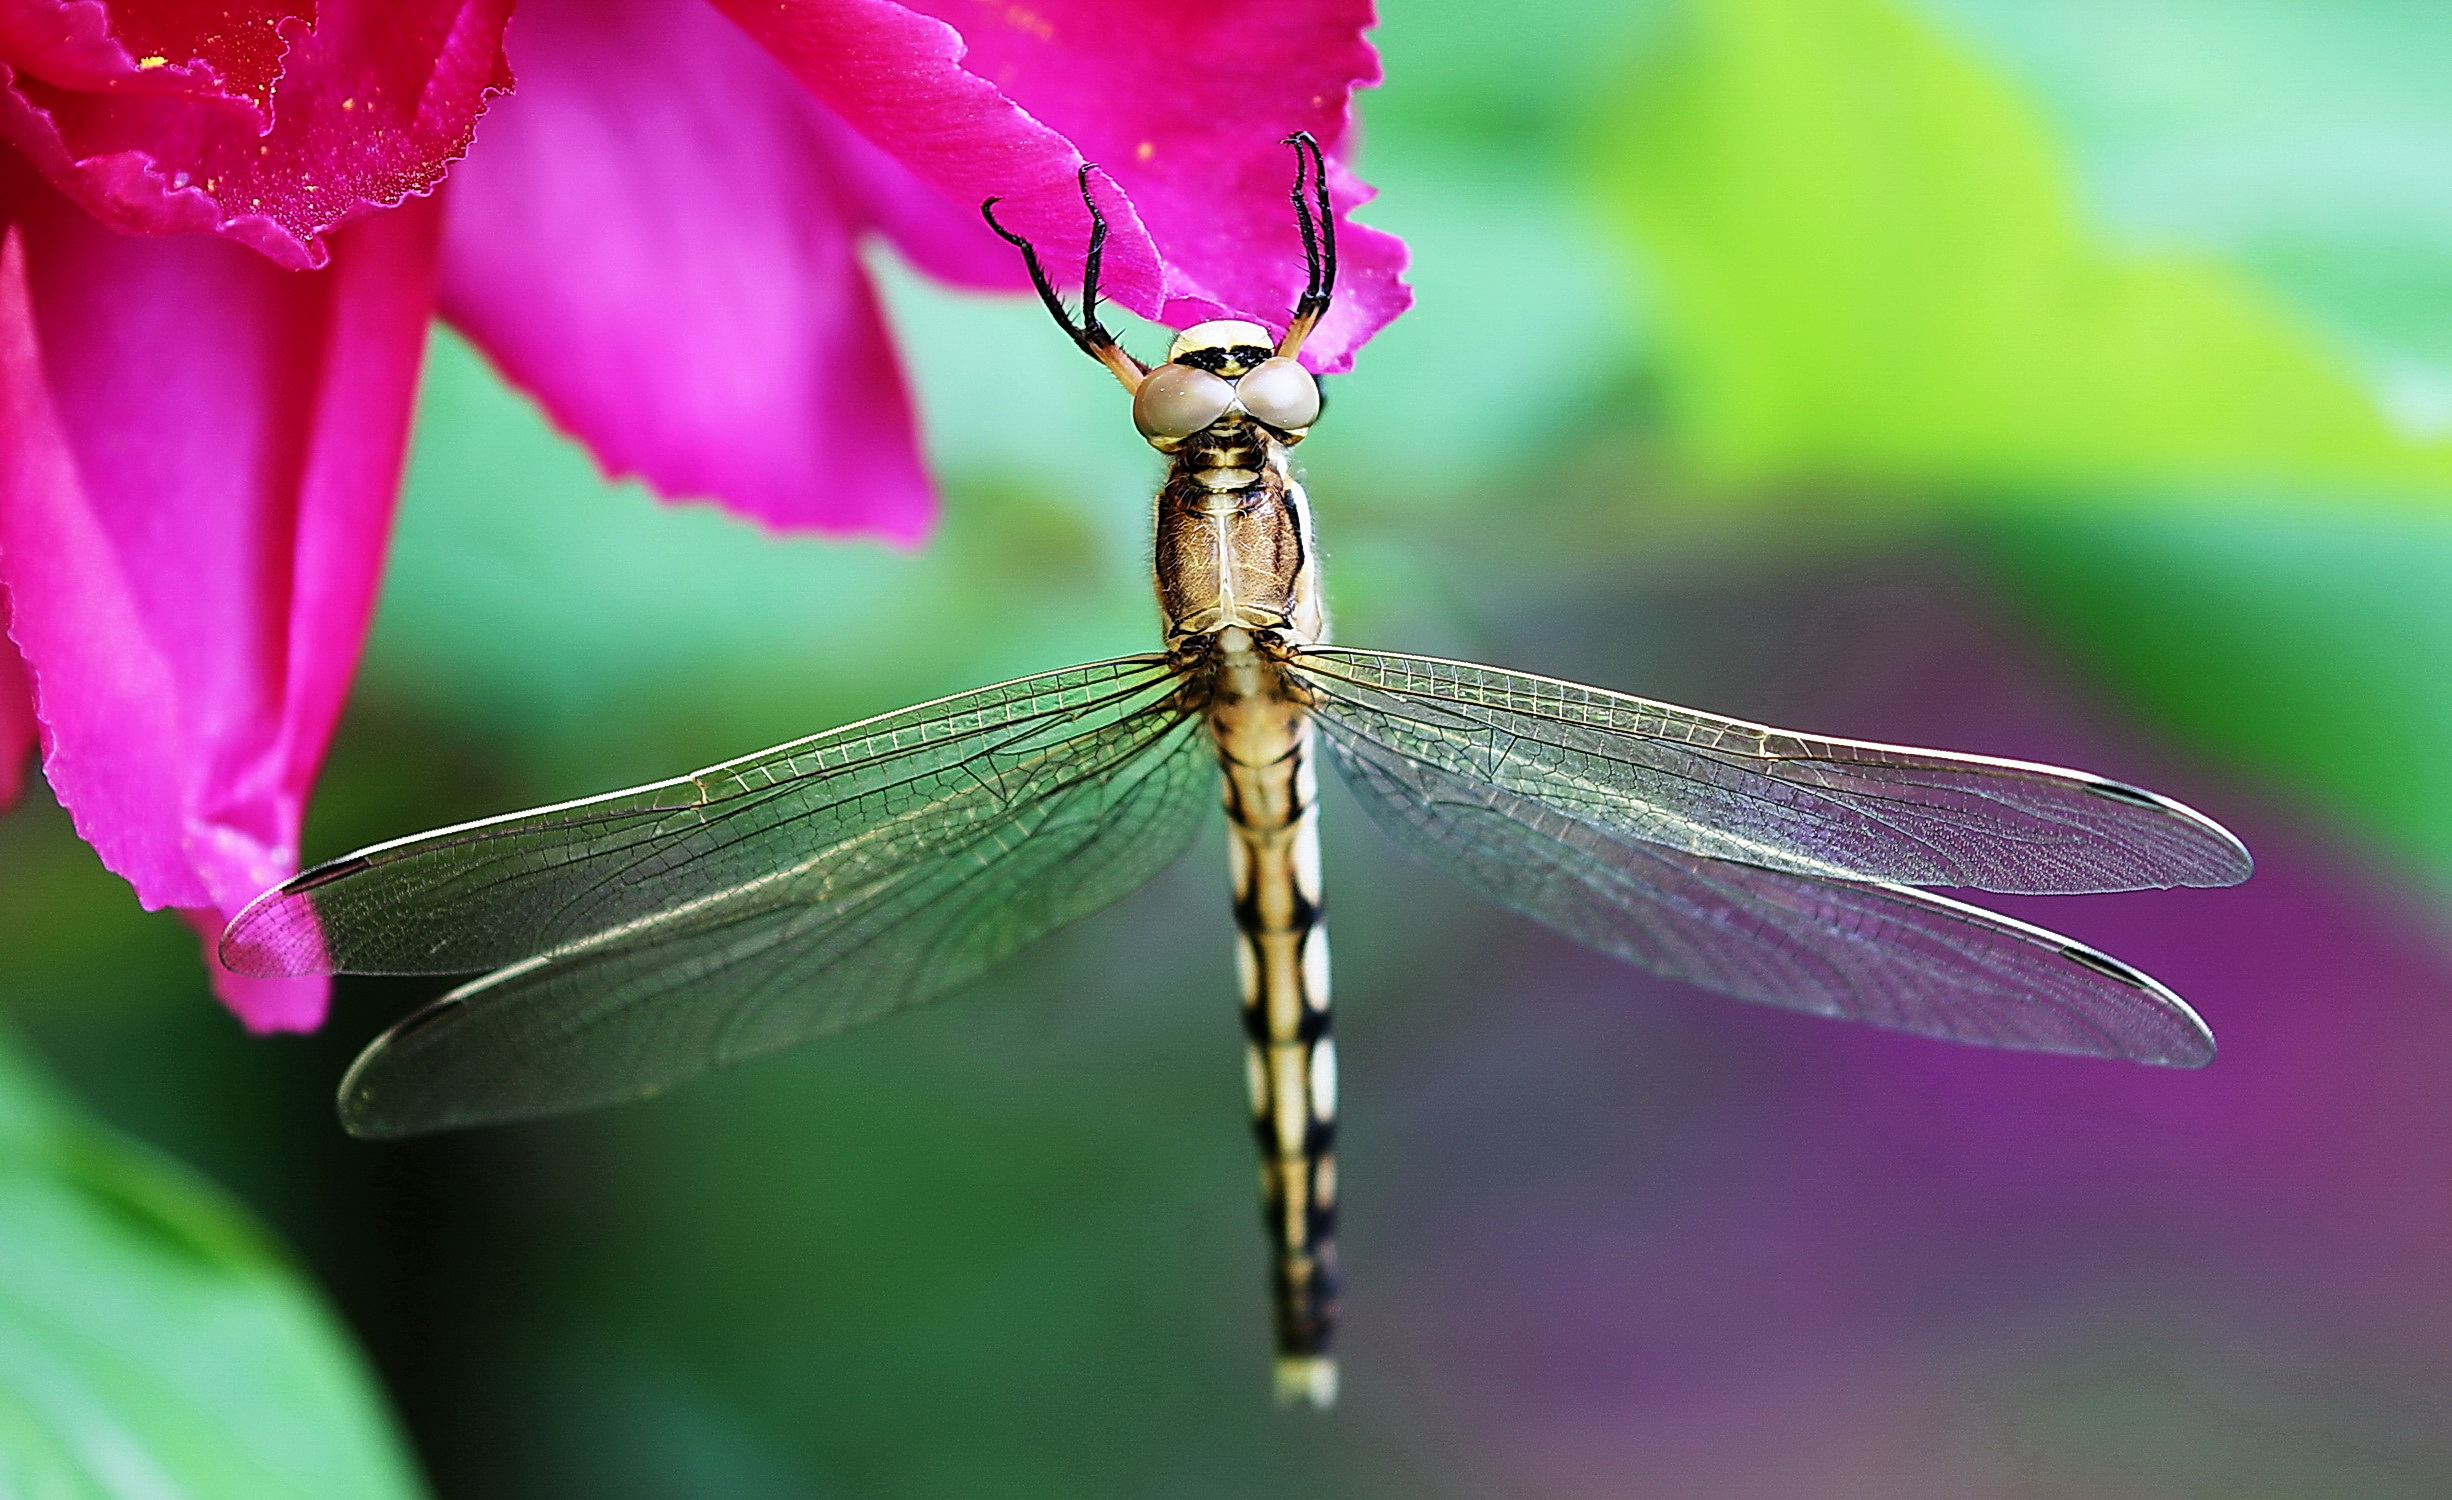 追寻自然之美:蜻蜓繁殖的神奇旅程